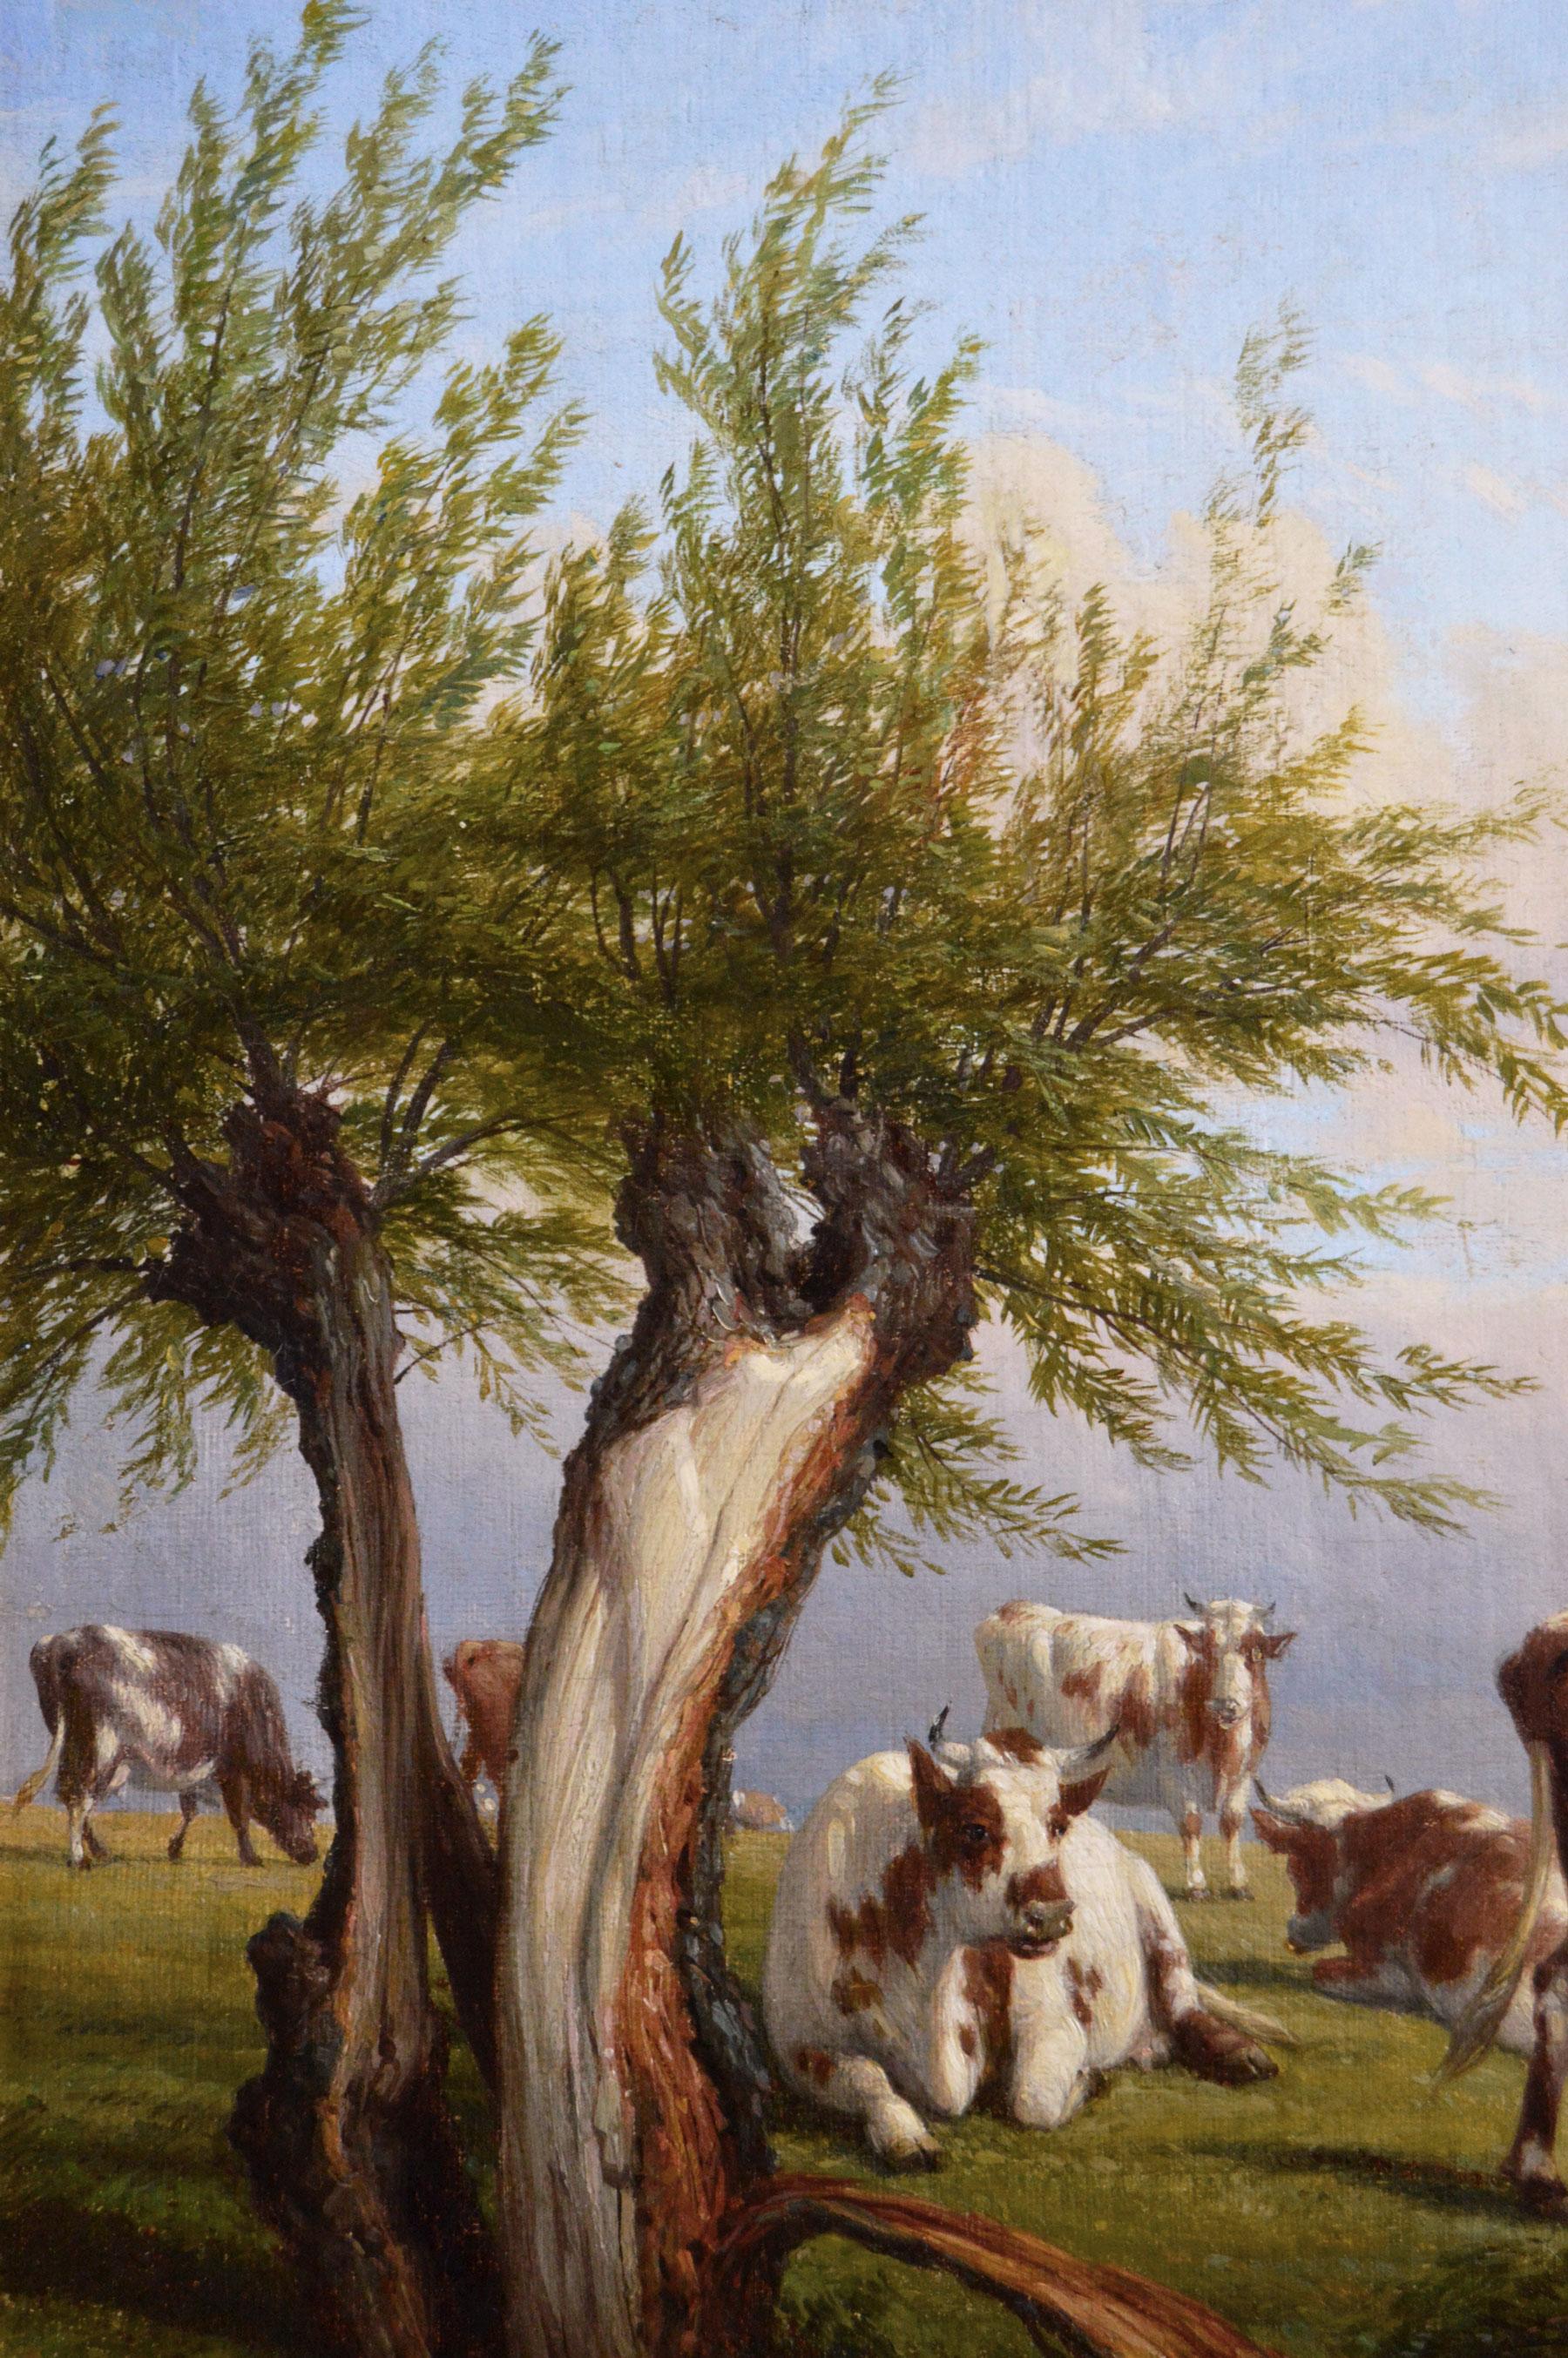 Landschafts-Ölgemälde von Rindern aus dem 19. Jahrhundert (Viktorianisch), Painting, von Thomas Baker of Leamington